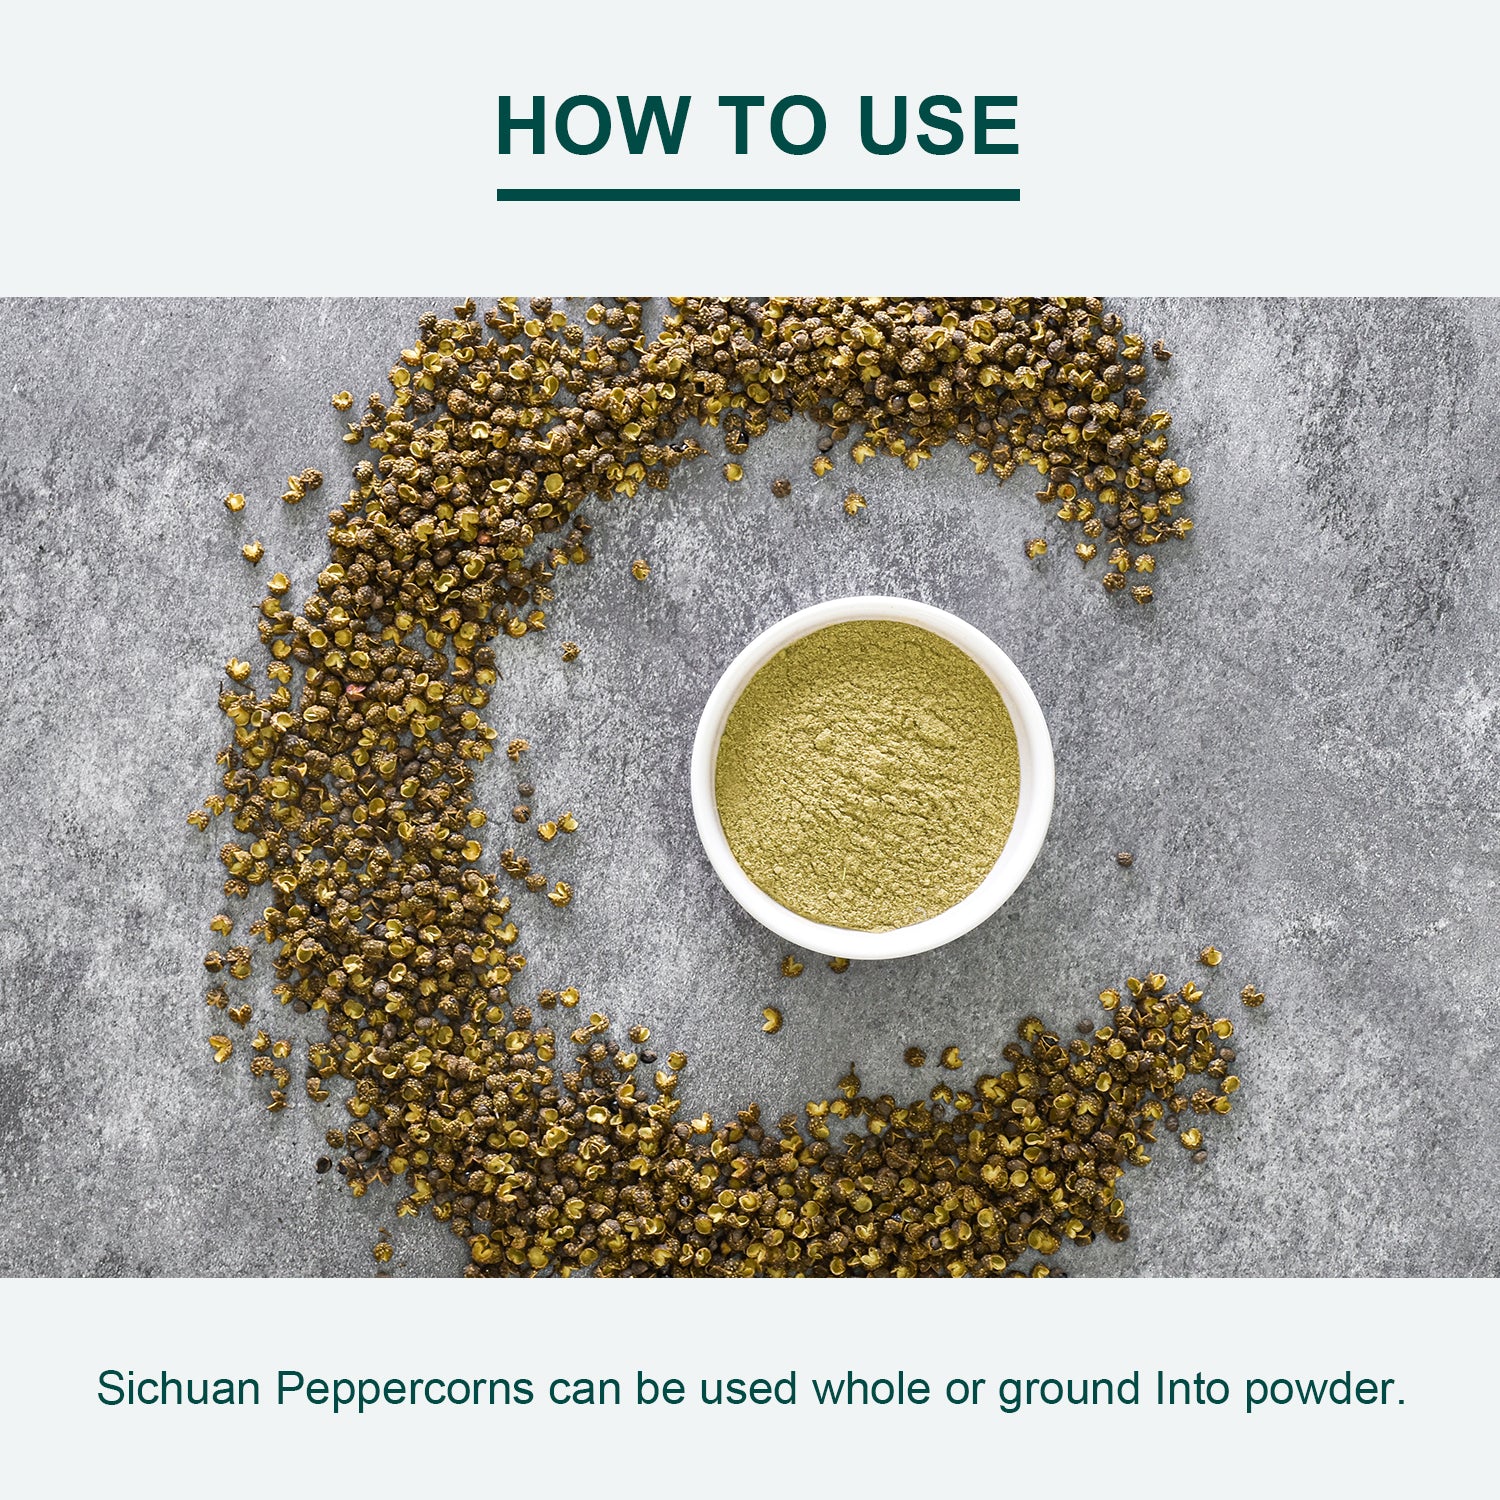 Green Sichuan Peppercorns, 4 oz.